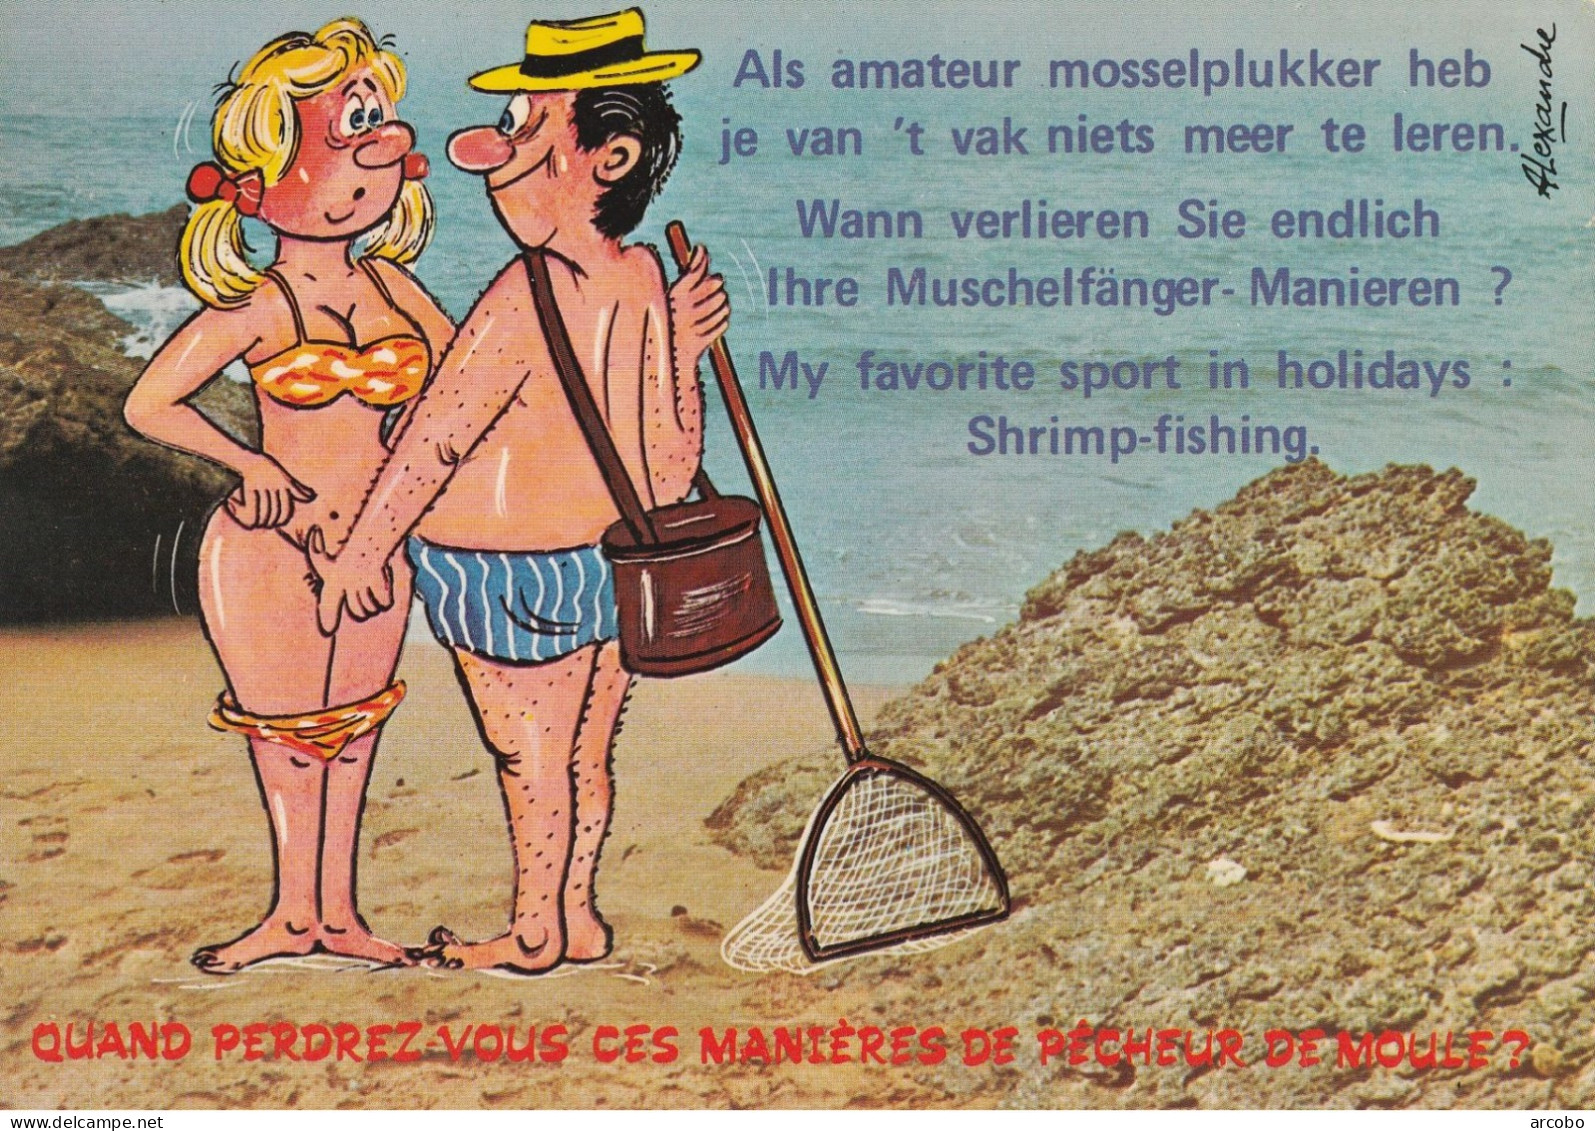 Mosselplukker, Muschelfänger, Shrimp-fishing - Humour